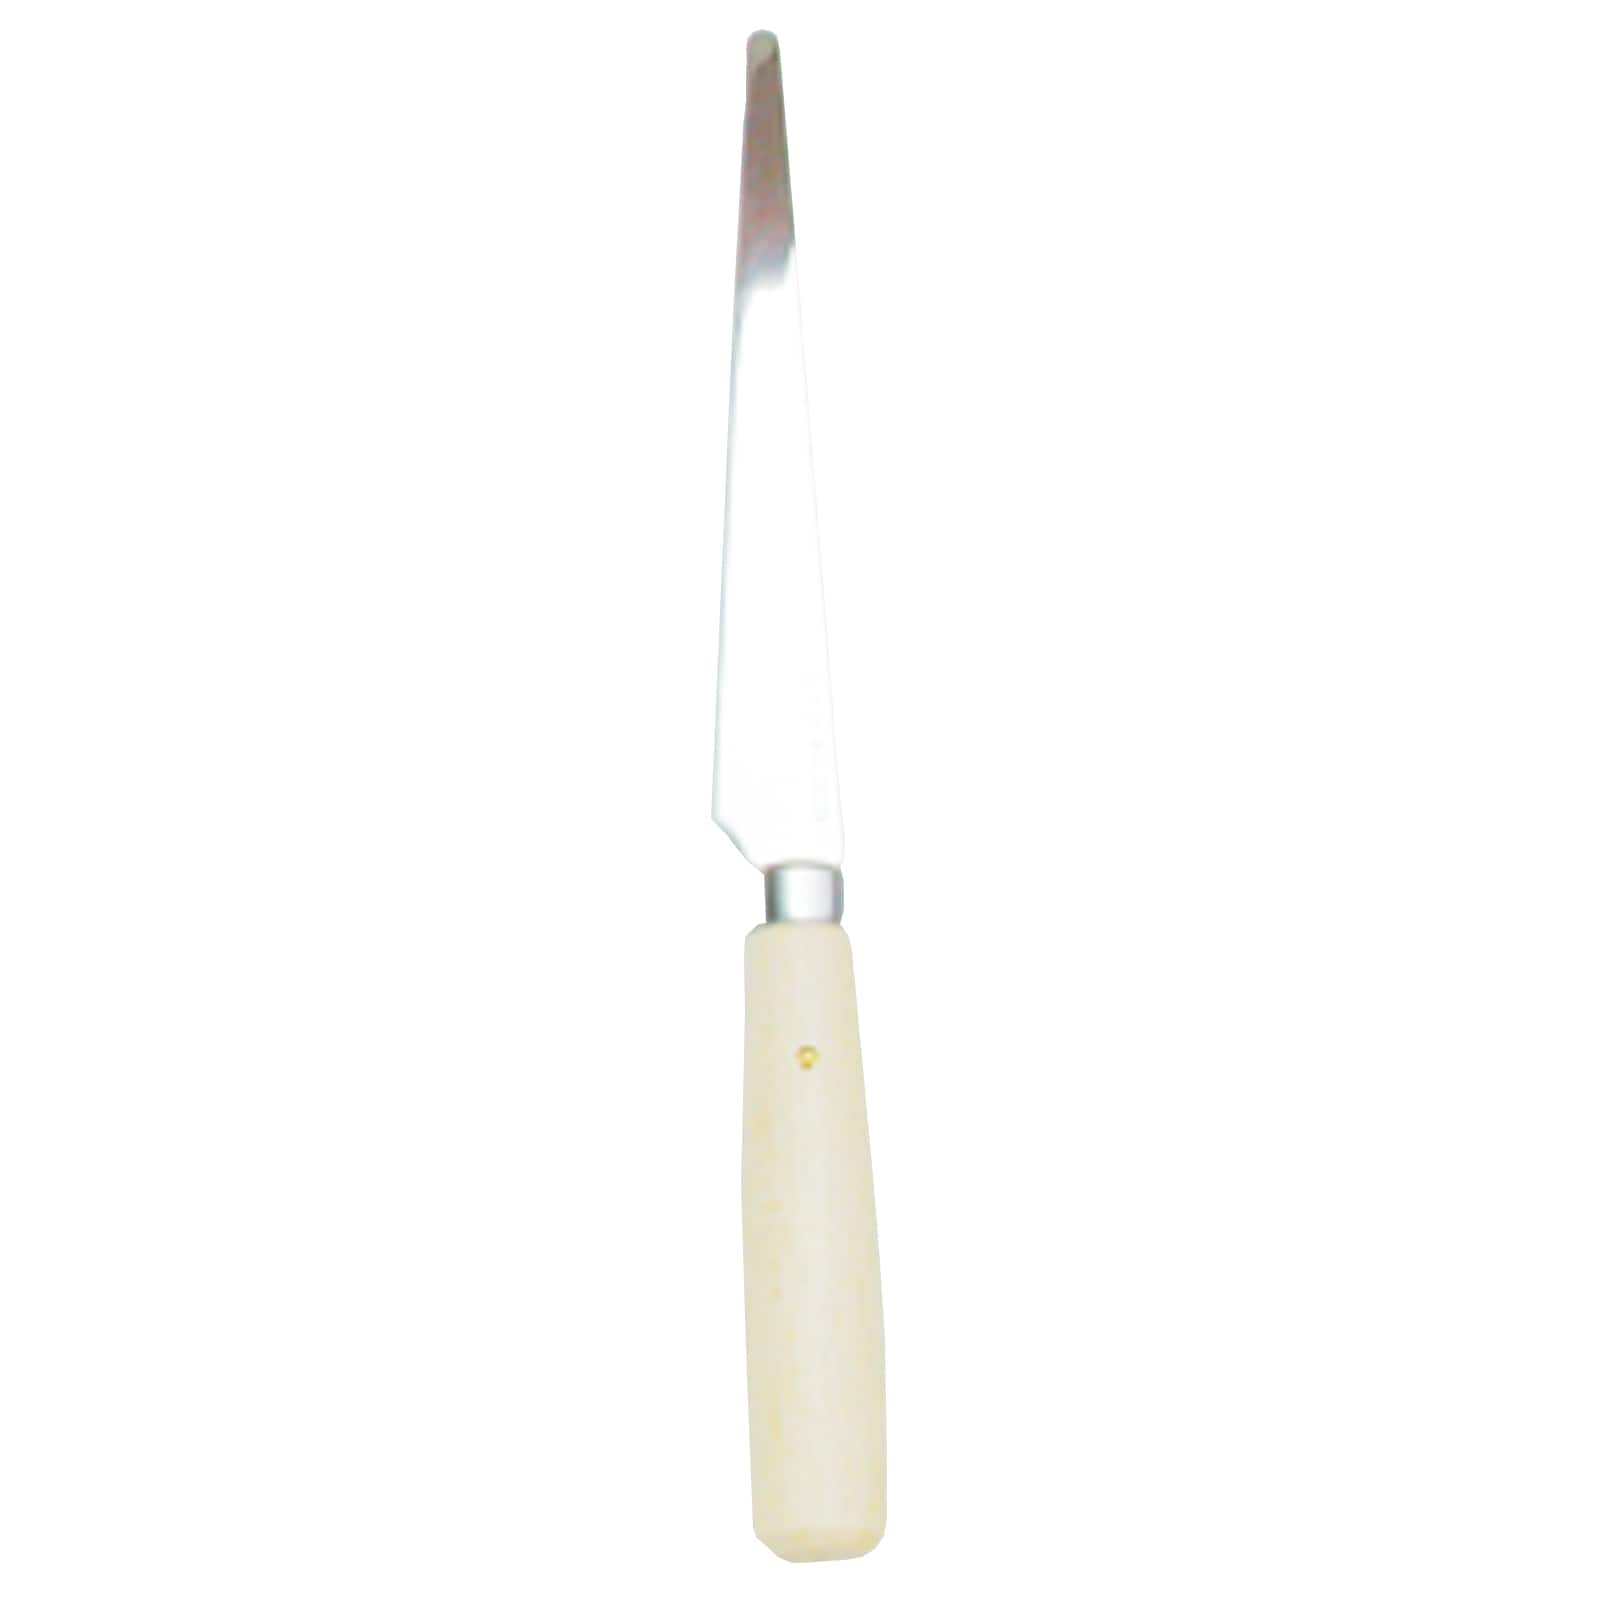 Kemper Soft Ceramic Fettling Knife